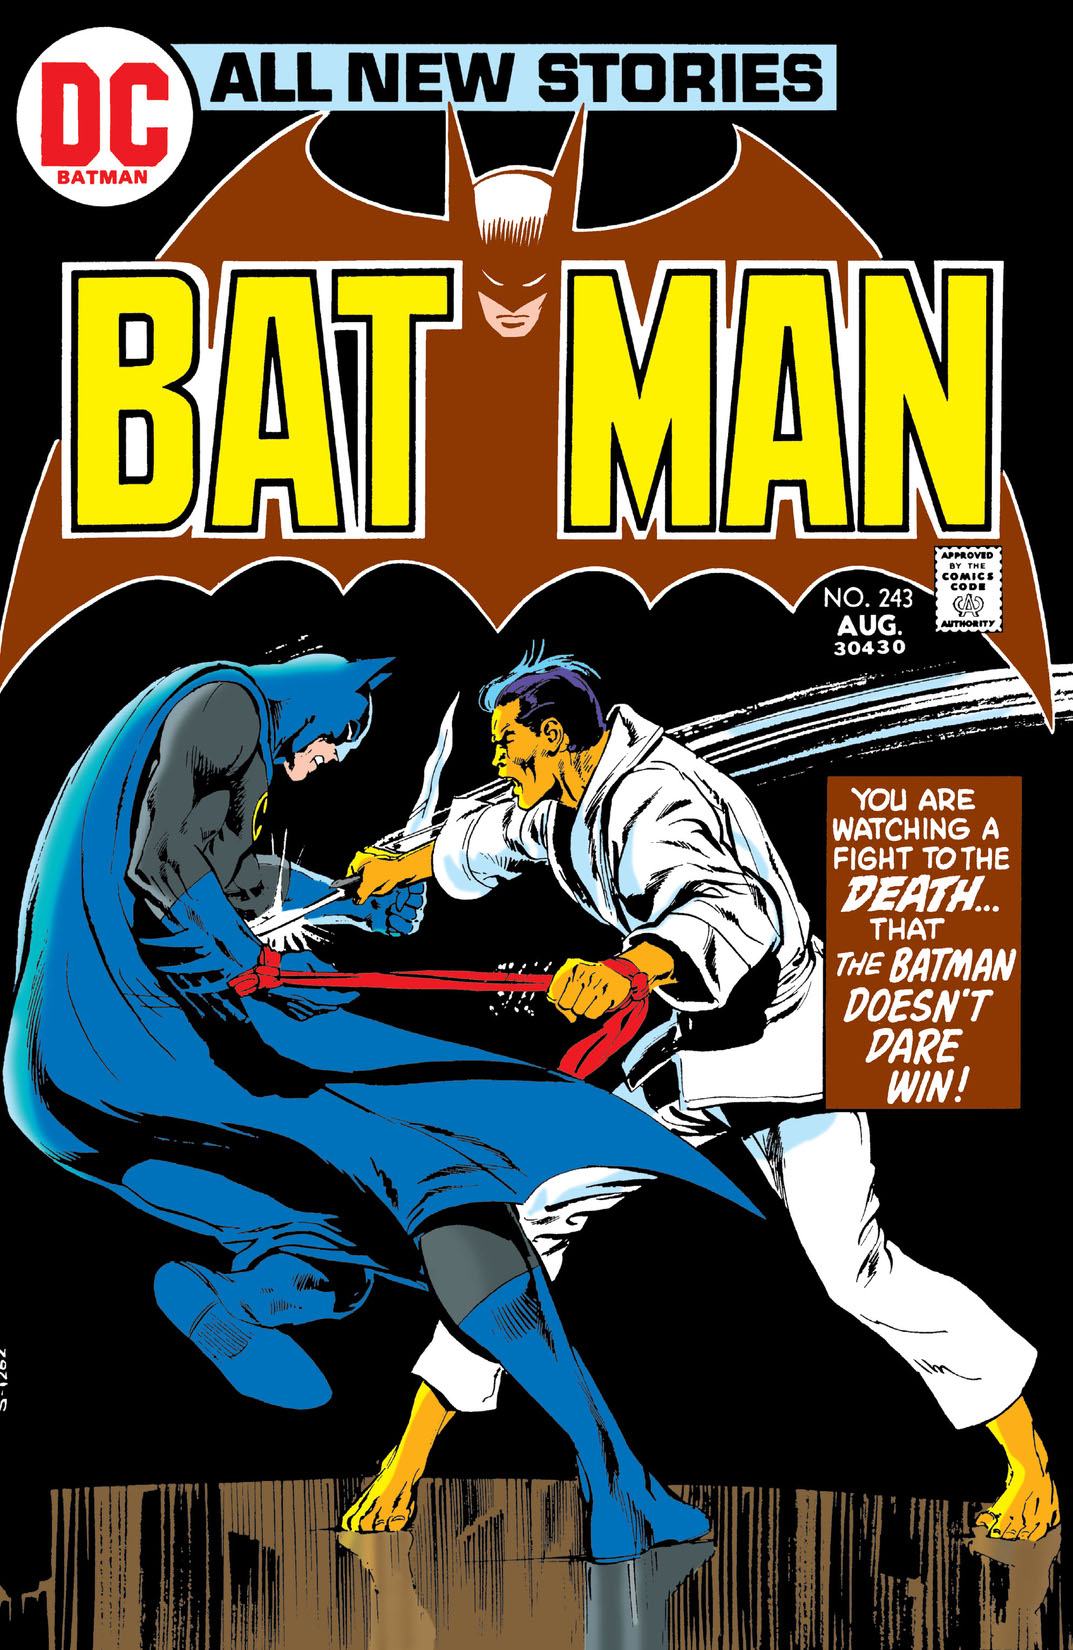 Batman (1940-) #243 preview images